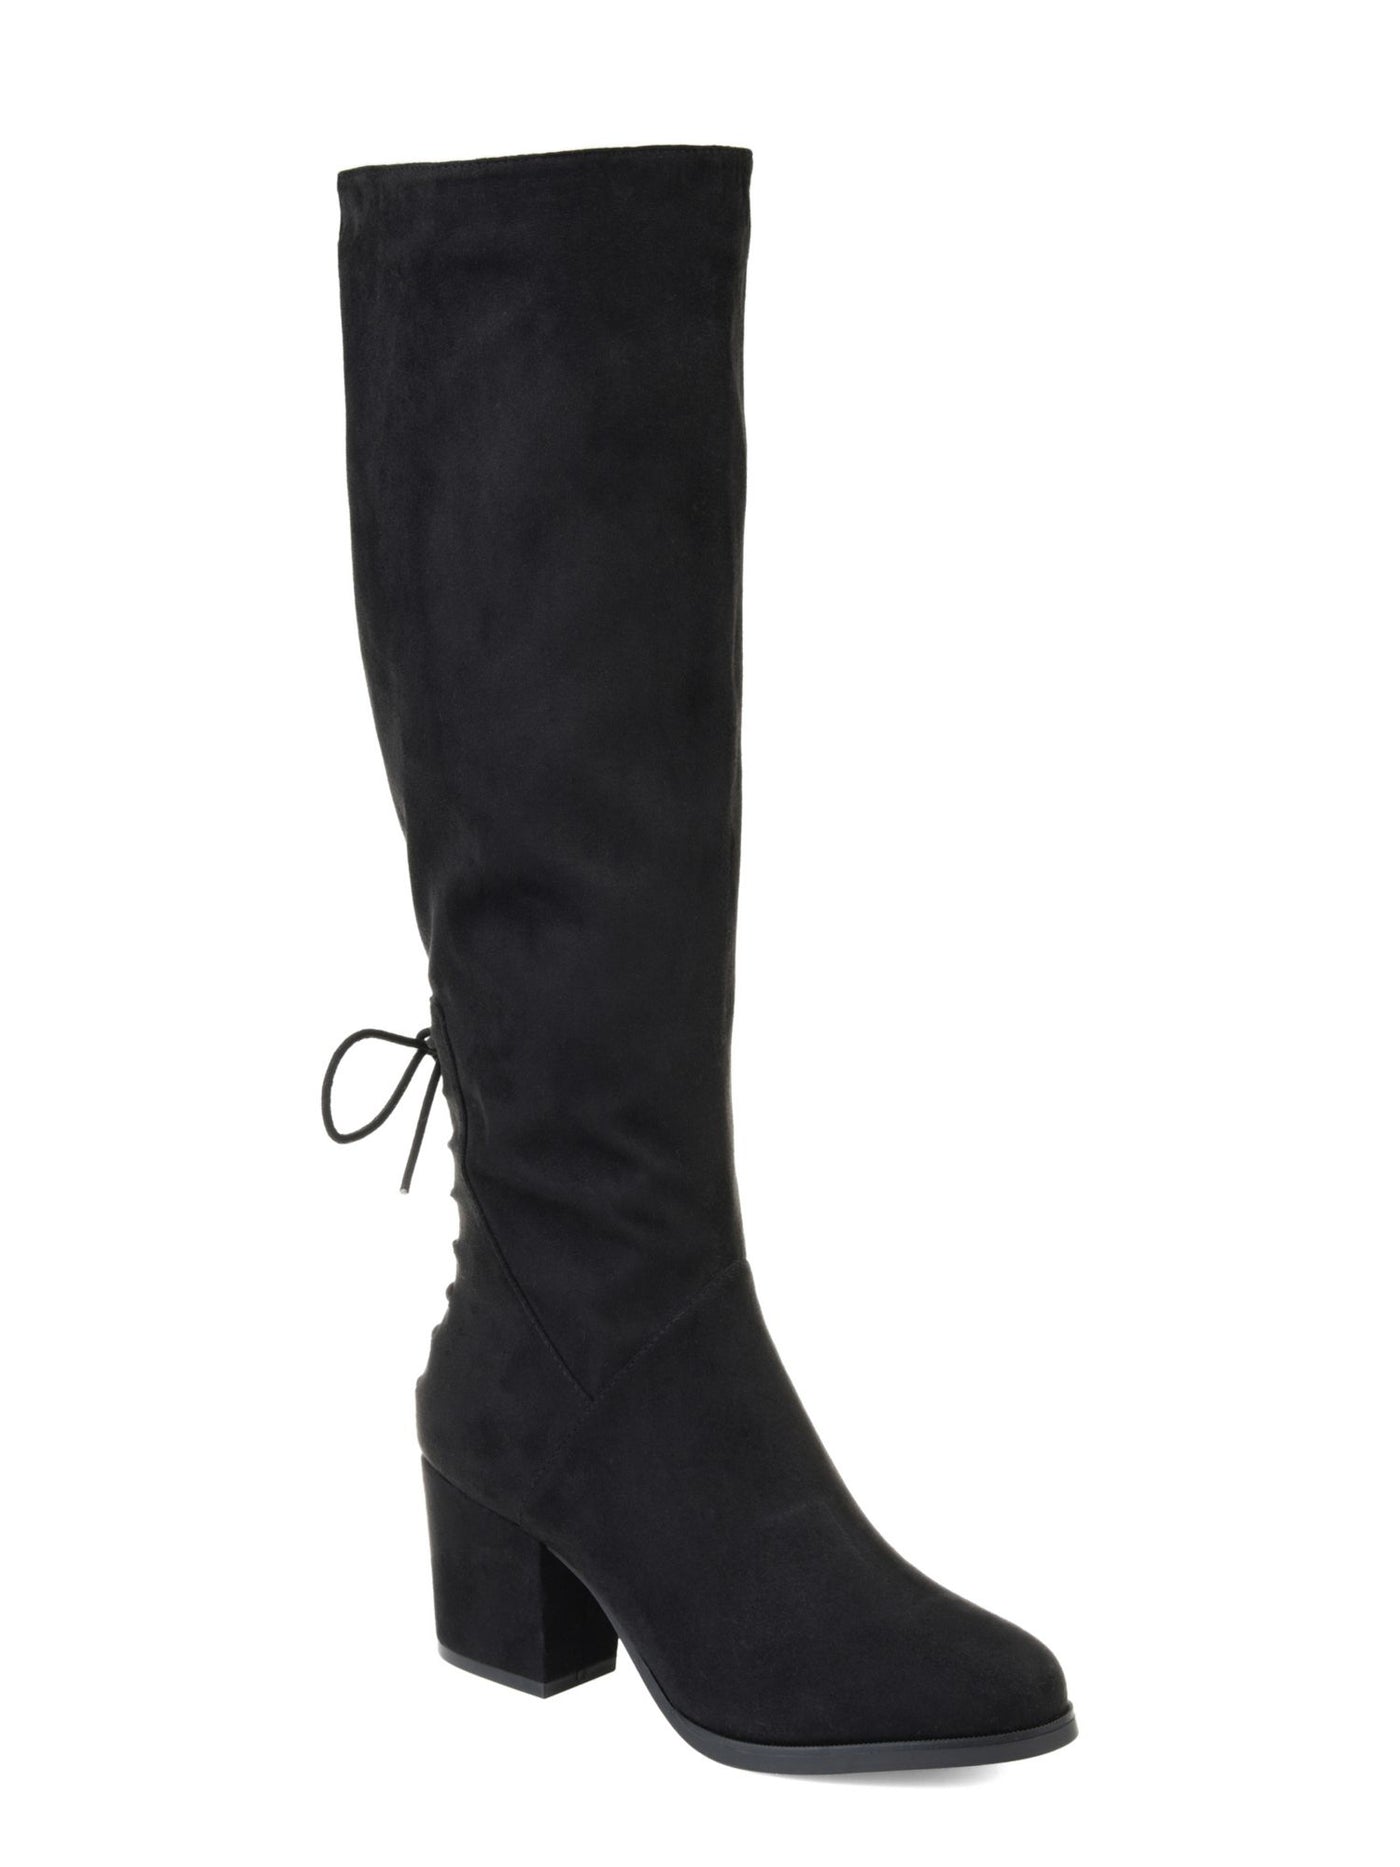 JOURNEE COLLECTION Womens Black Goring Comfort Lace Leeda Round Toe Block Heel Zip-Up Dress Boots 7 M